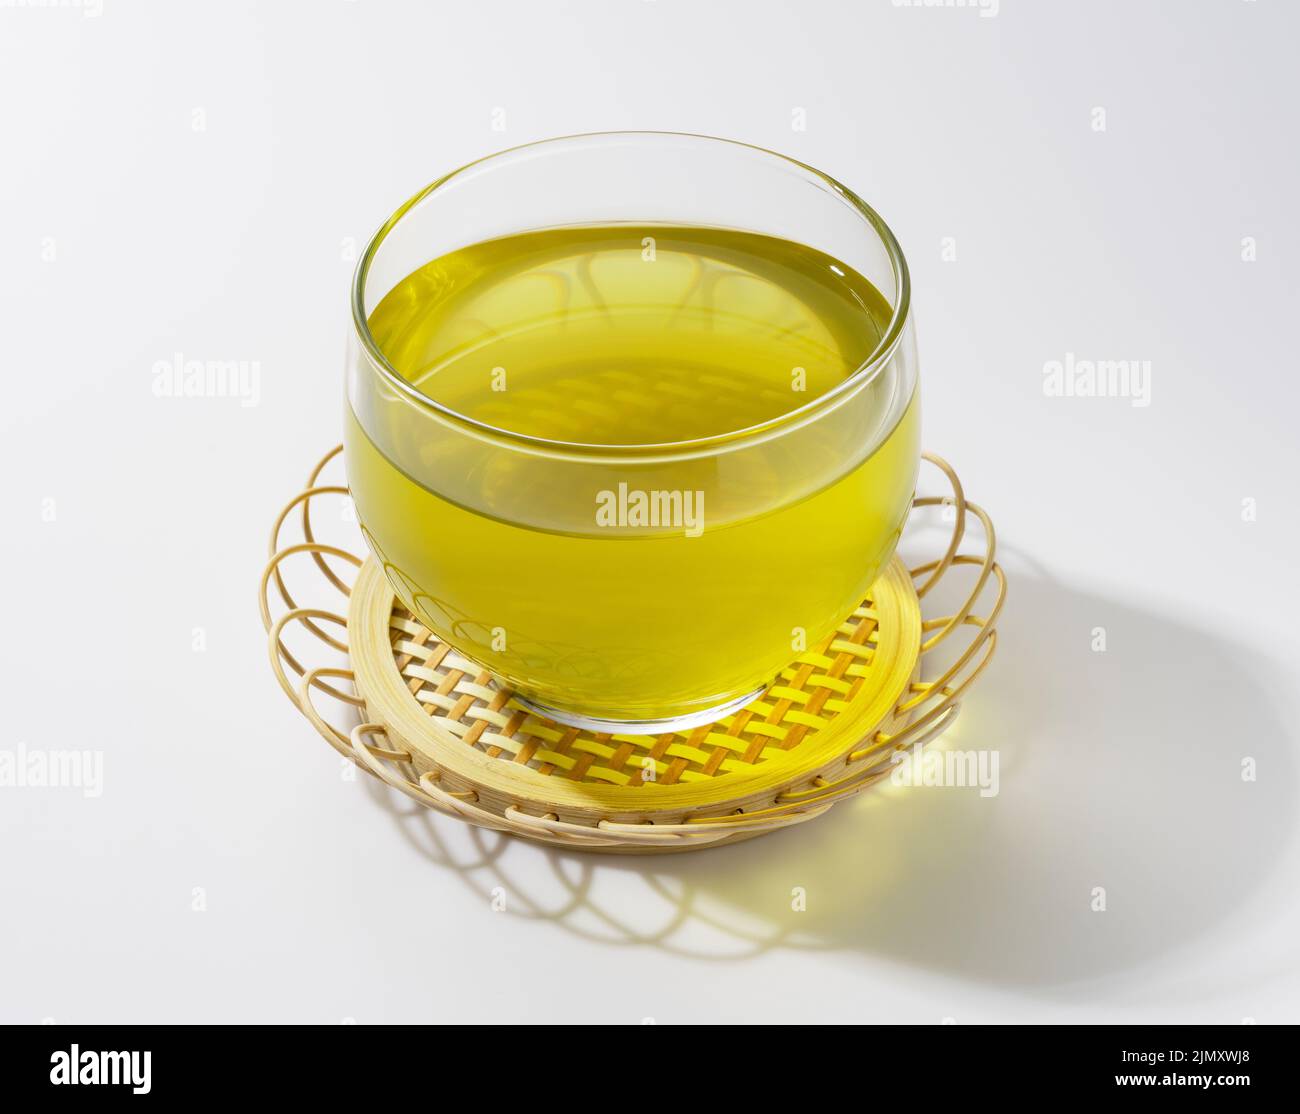 Kalter japanischer grüner Tee vor weißem Hintergrund Stockfotografie - Alamy